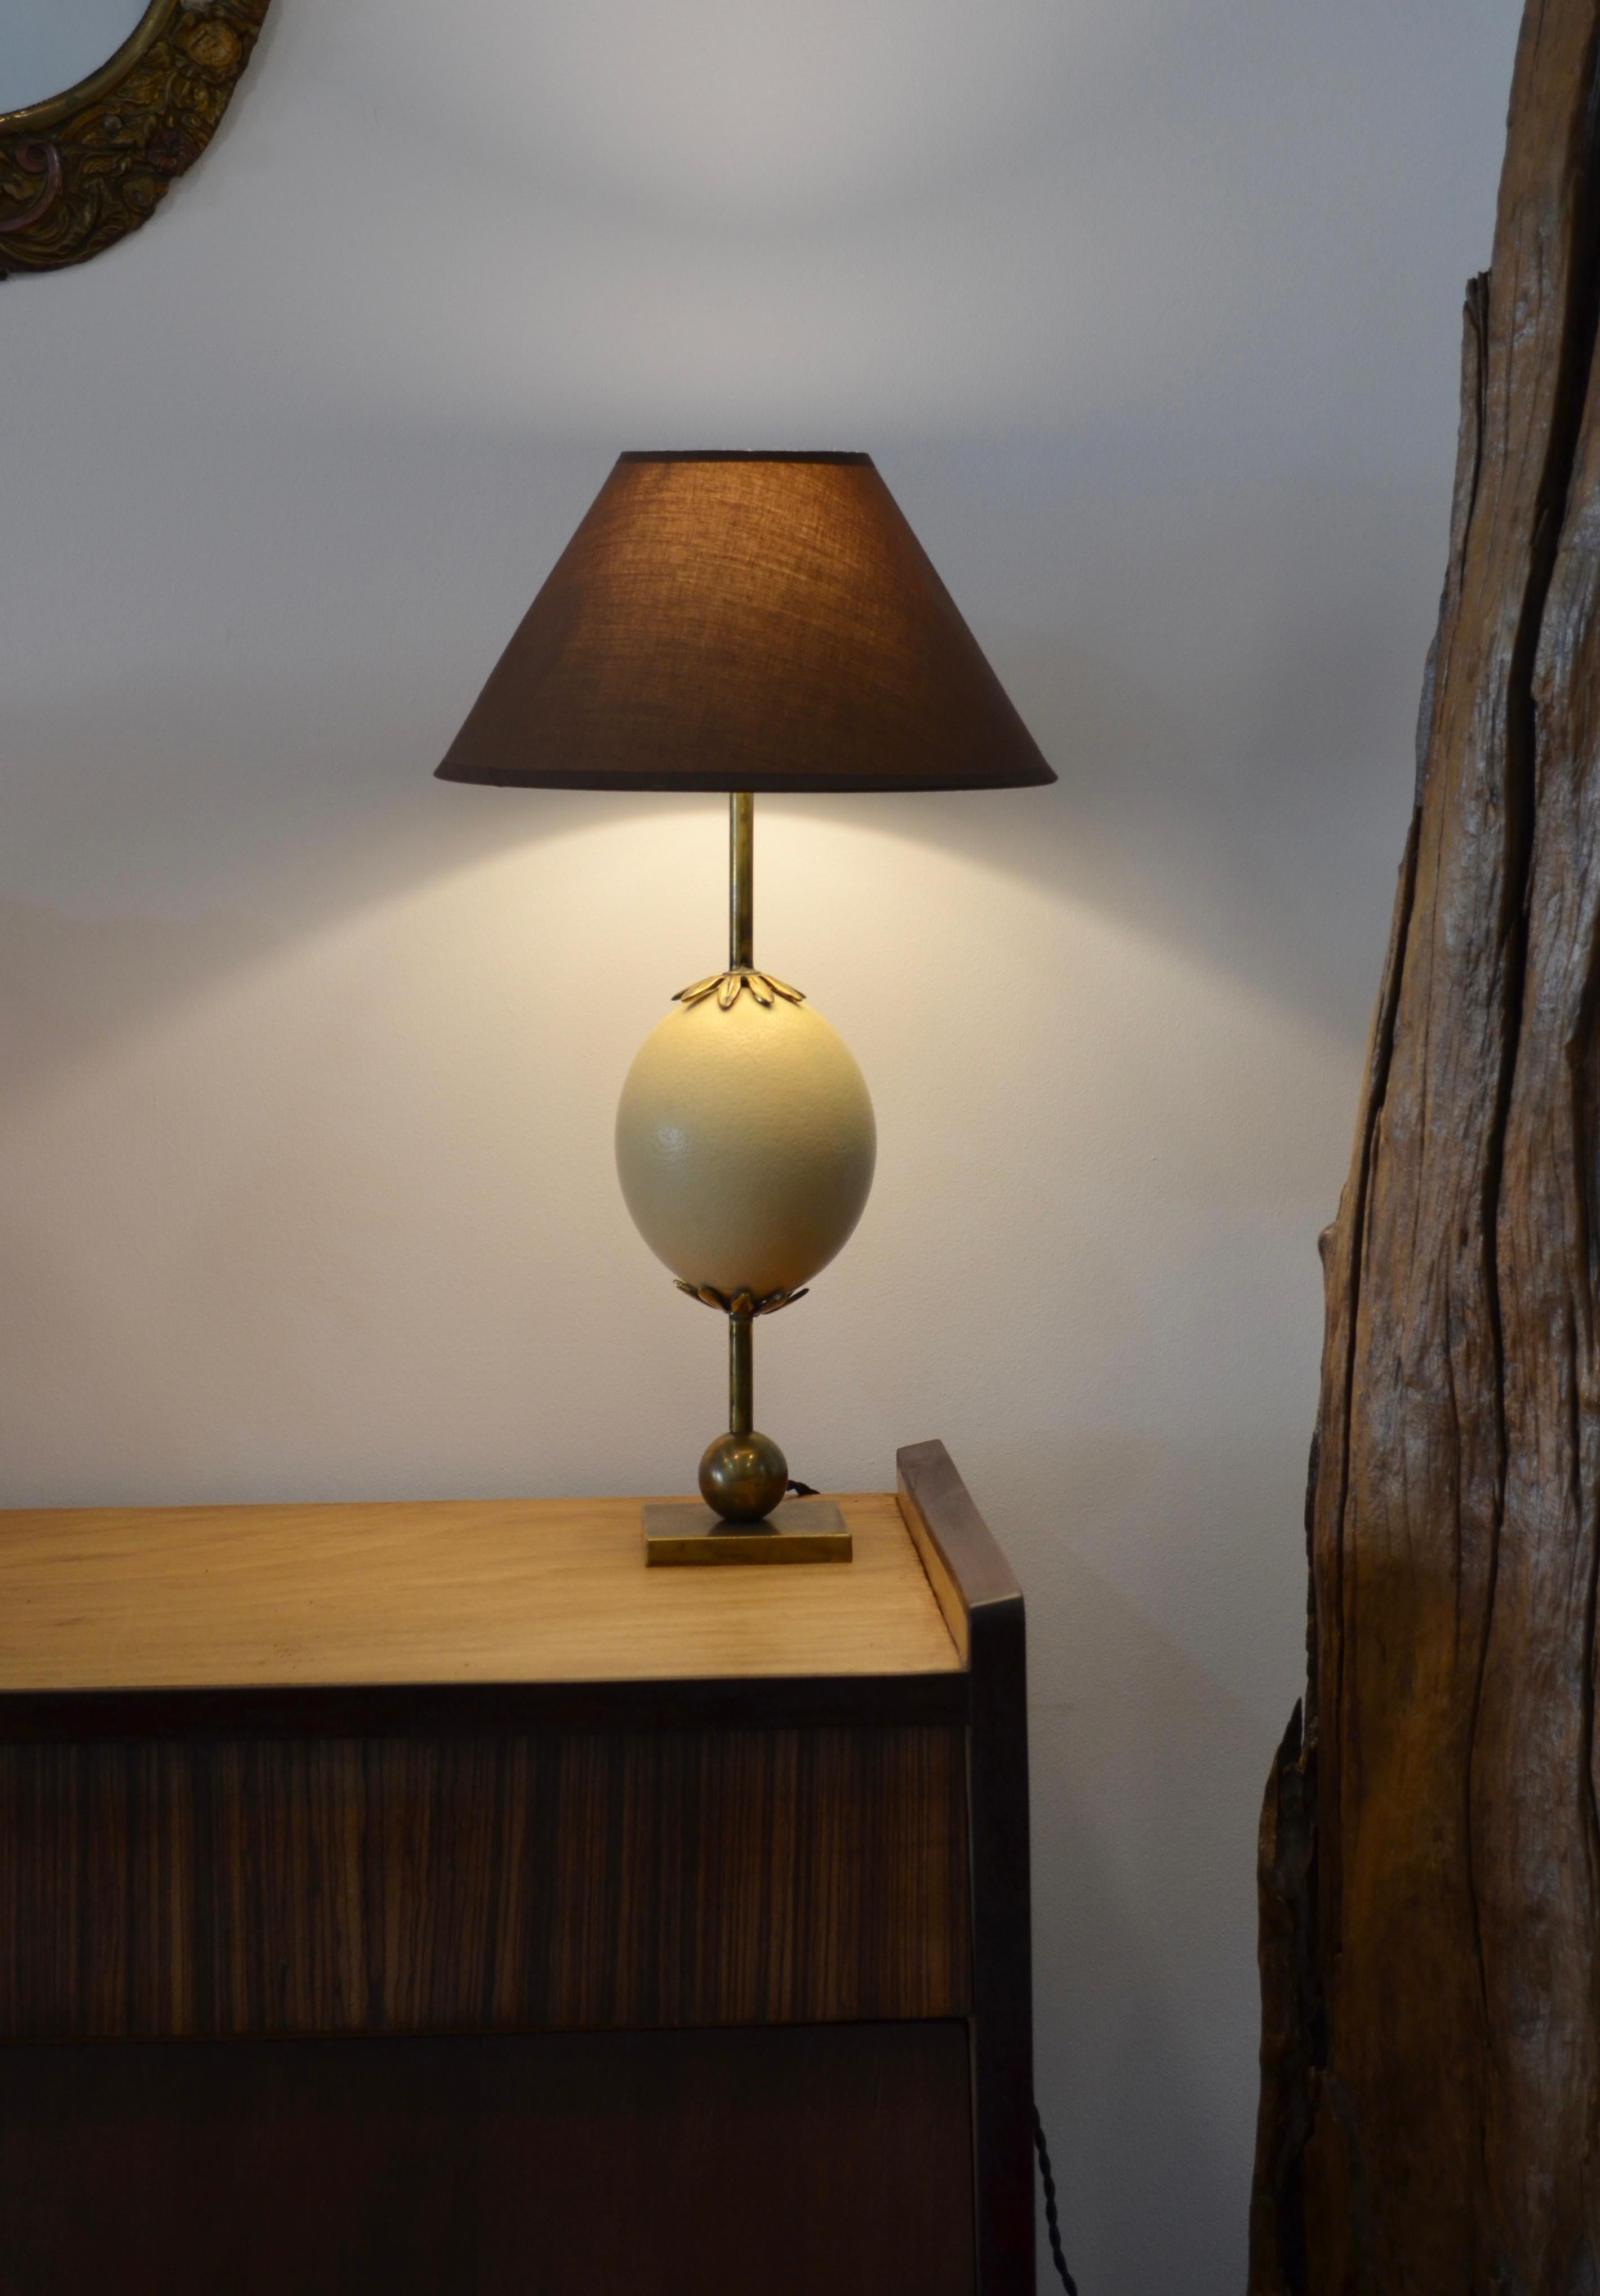 Elegante Messinglampe, bestehend aus einem Straußenei mit Bronzekragen
einige Schattierungen von Weiß auf dem Ei.
Zu verkaufen ohne Lampenschirm